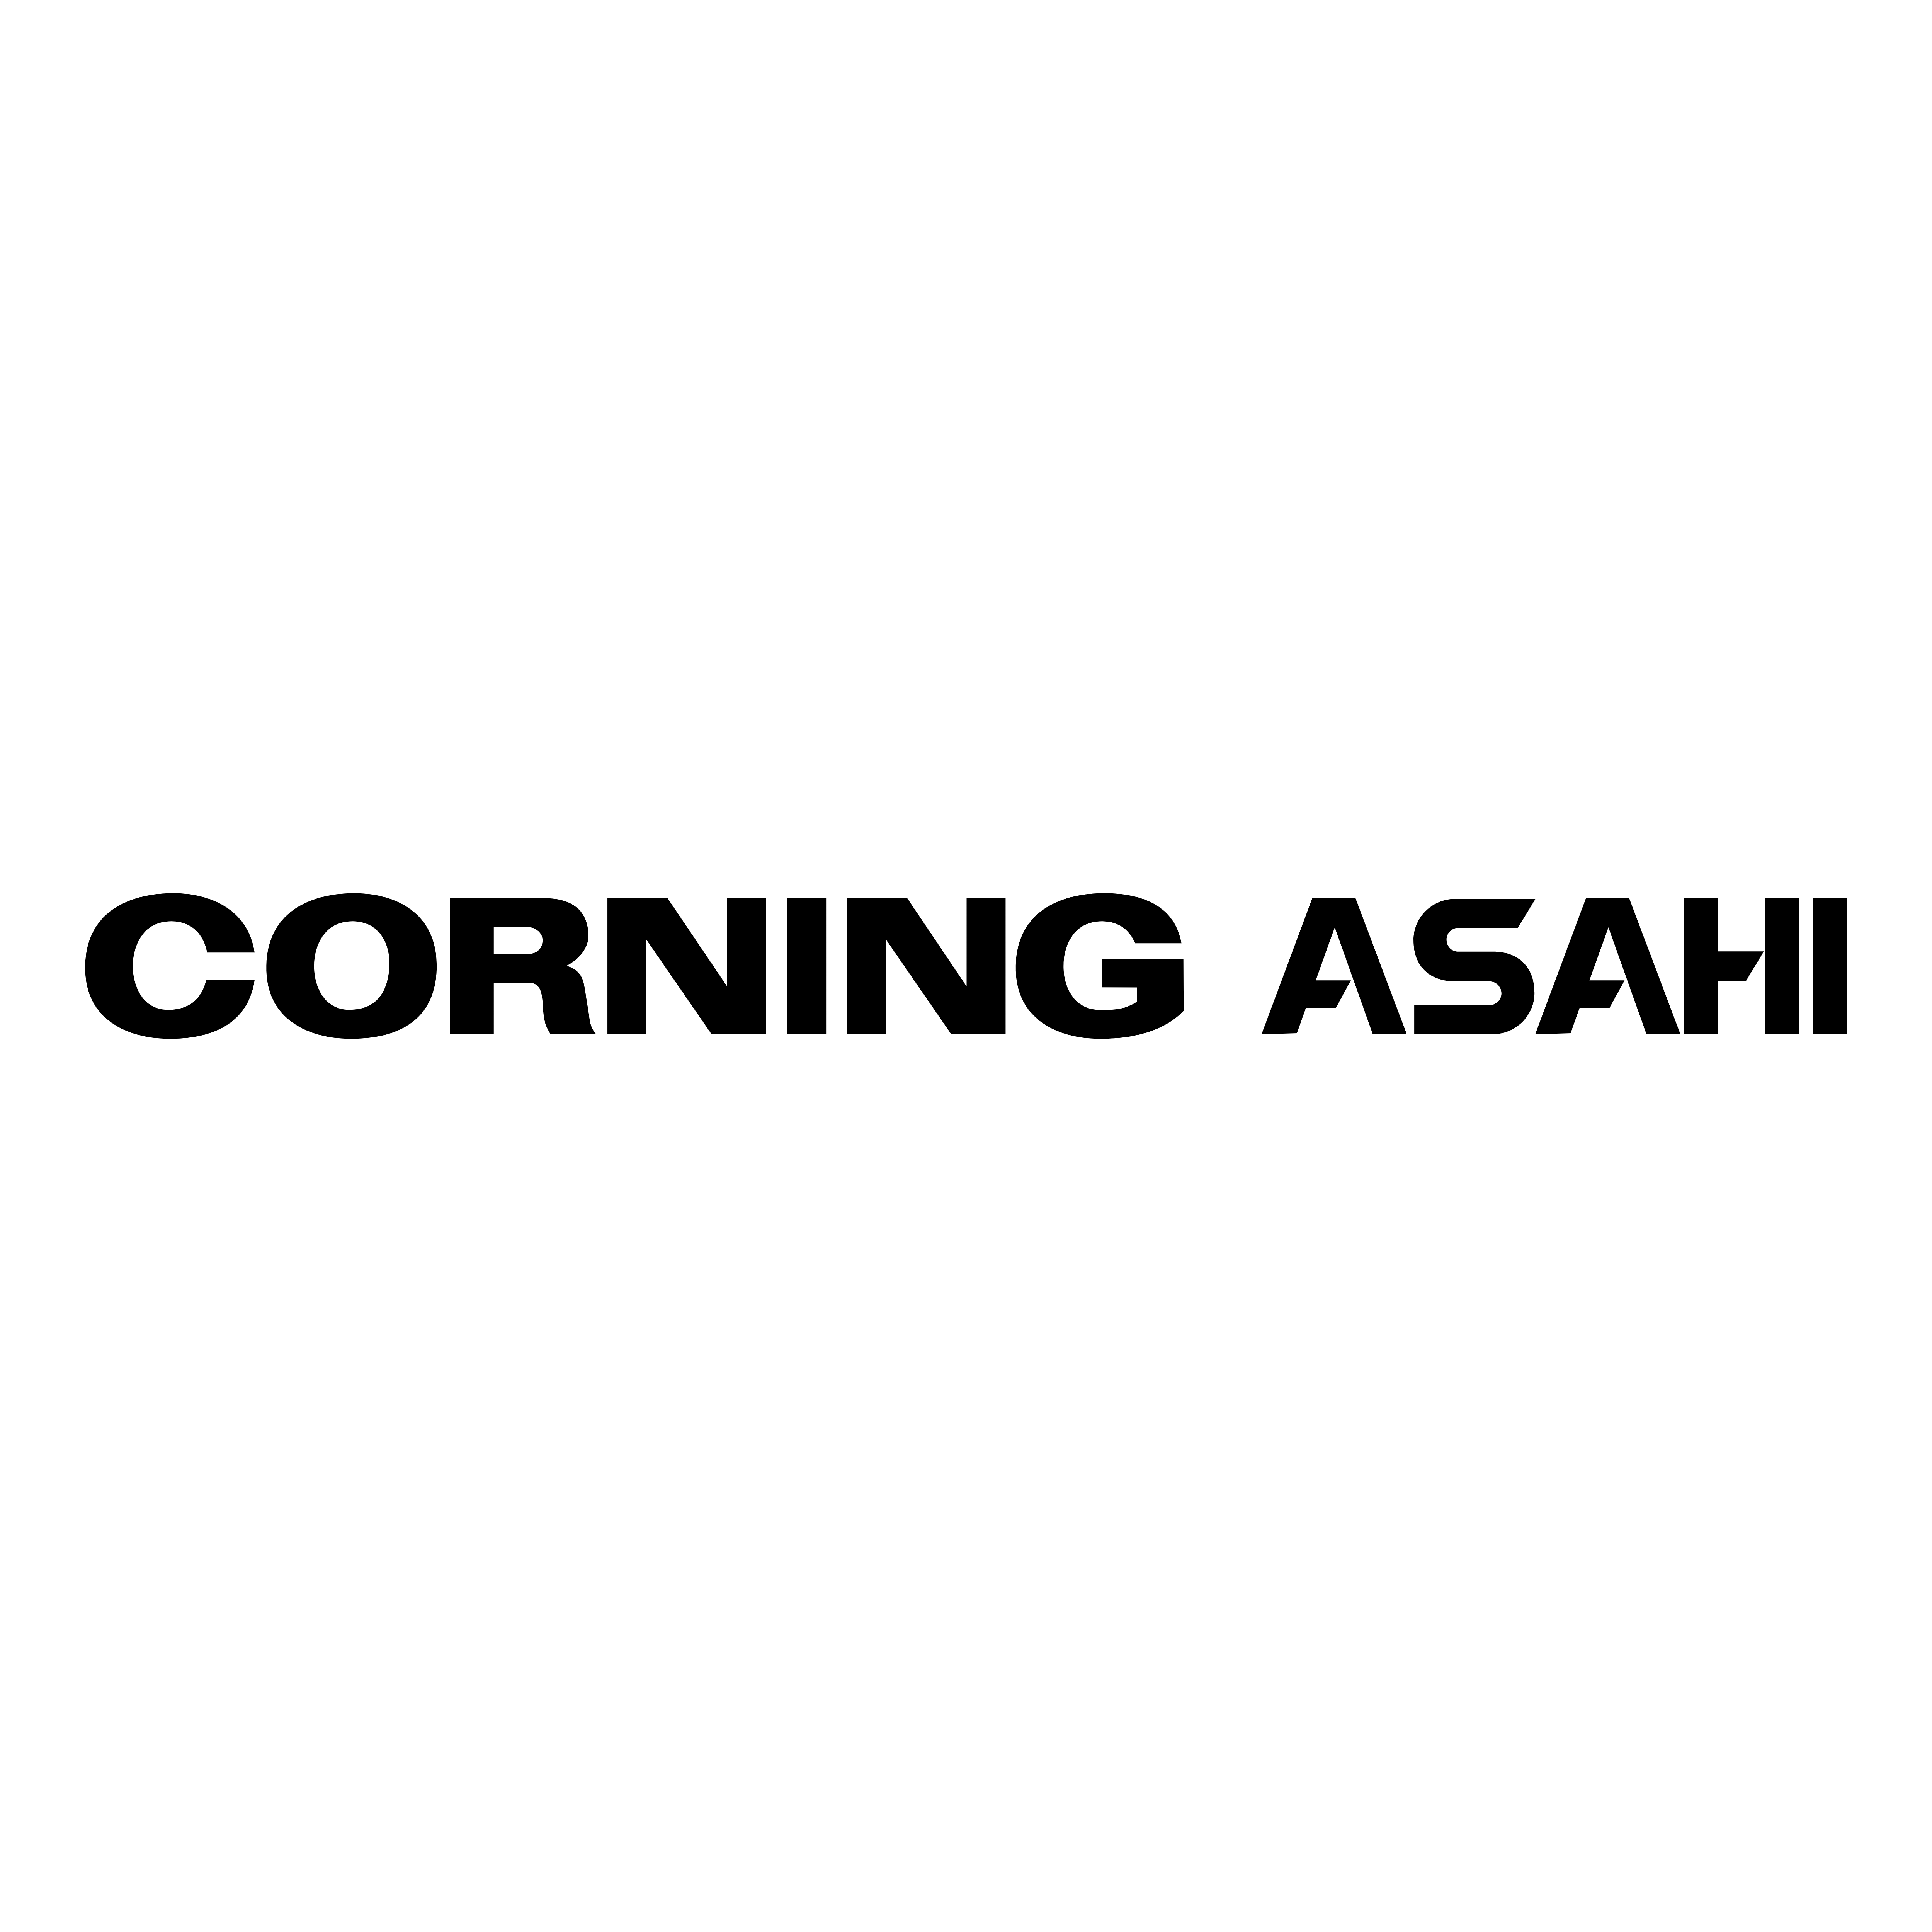 Asahi Logo - Asahi Corning – Logos Download